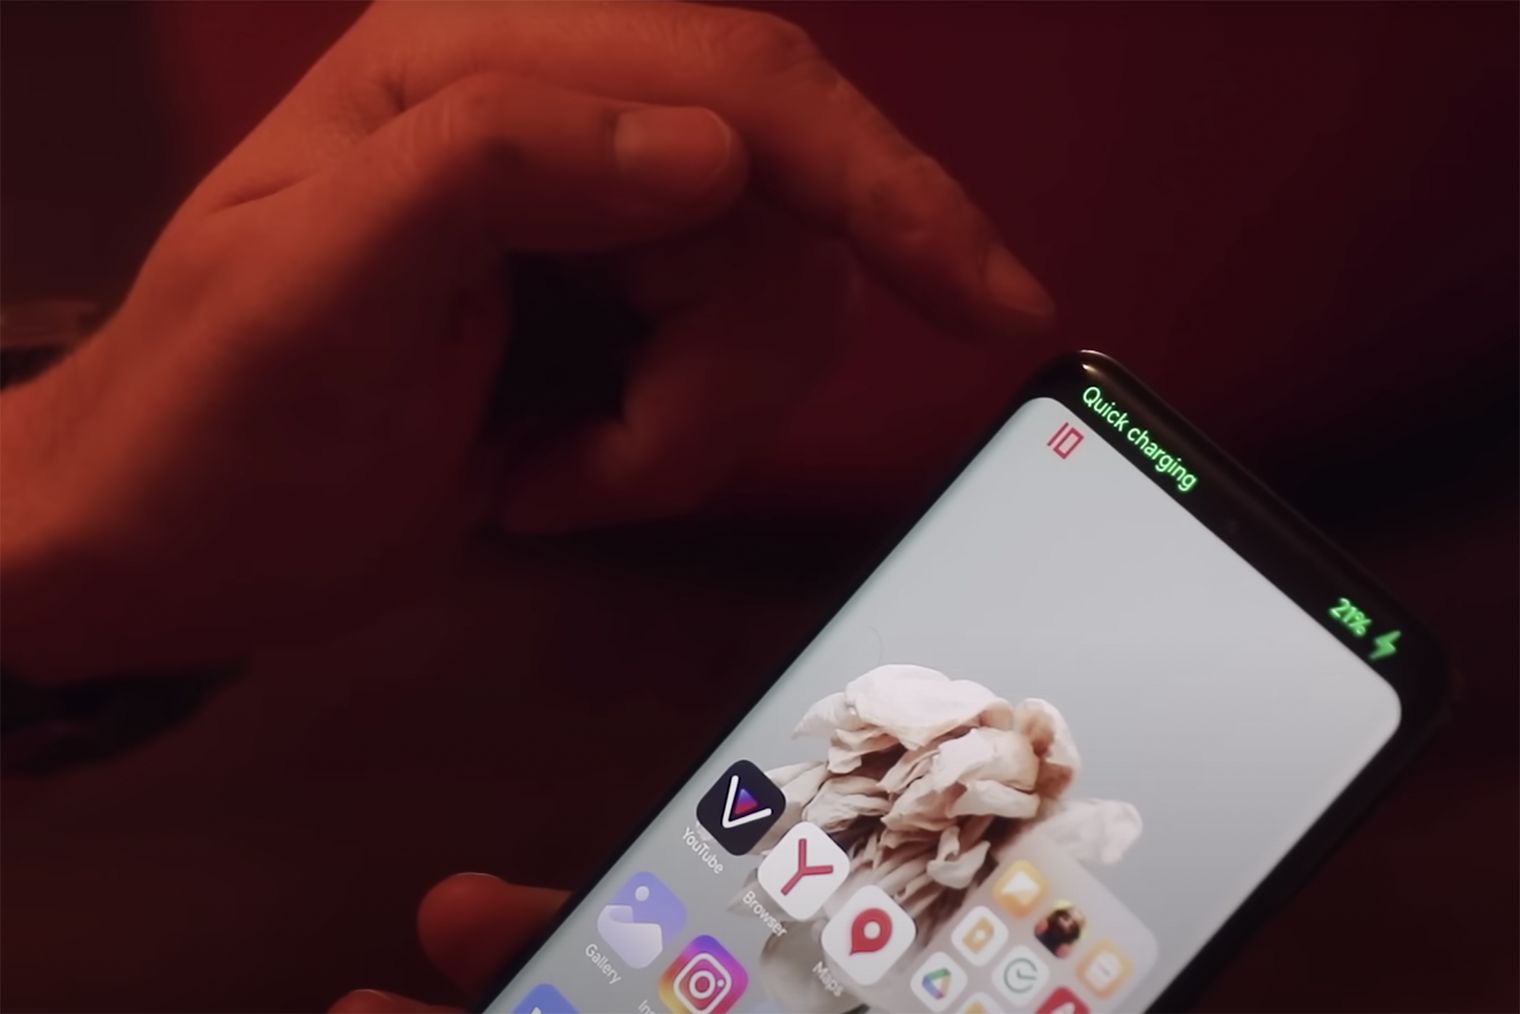 Xiaomi так стремится сделать свои смартфоны похожими на iPhone, что встроила в телефон аналог Dynamic Island. При подключении зарядки информация об этом отображается на весь верх экрана. Источник: ютуб⁠-⁠канал ЧЕСТНЫЙ БЛОГ